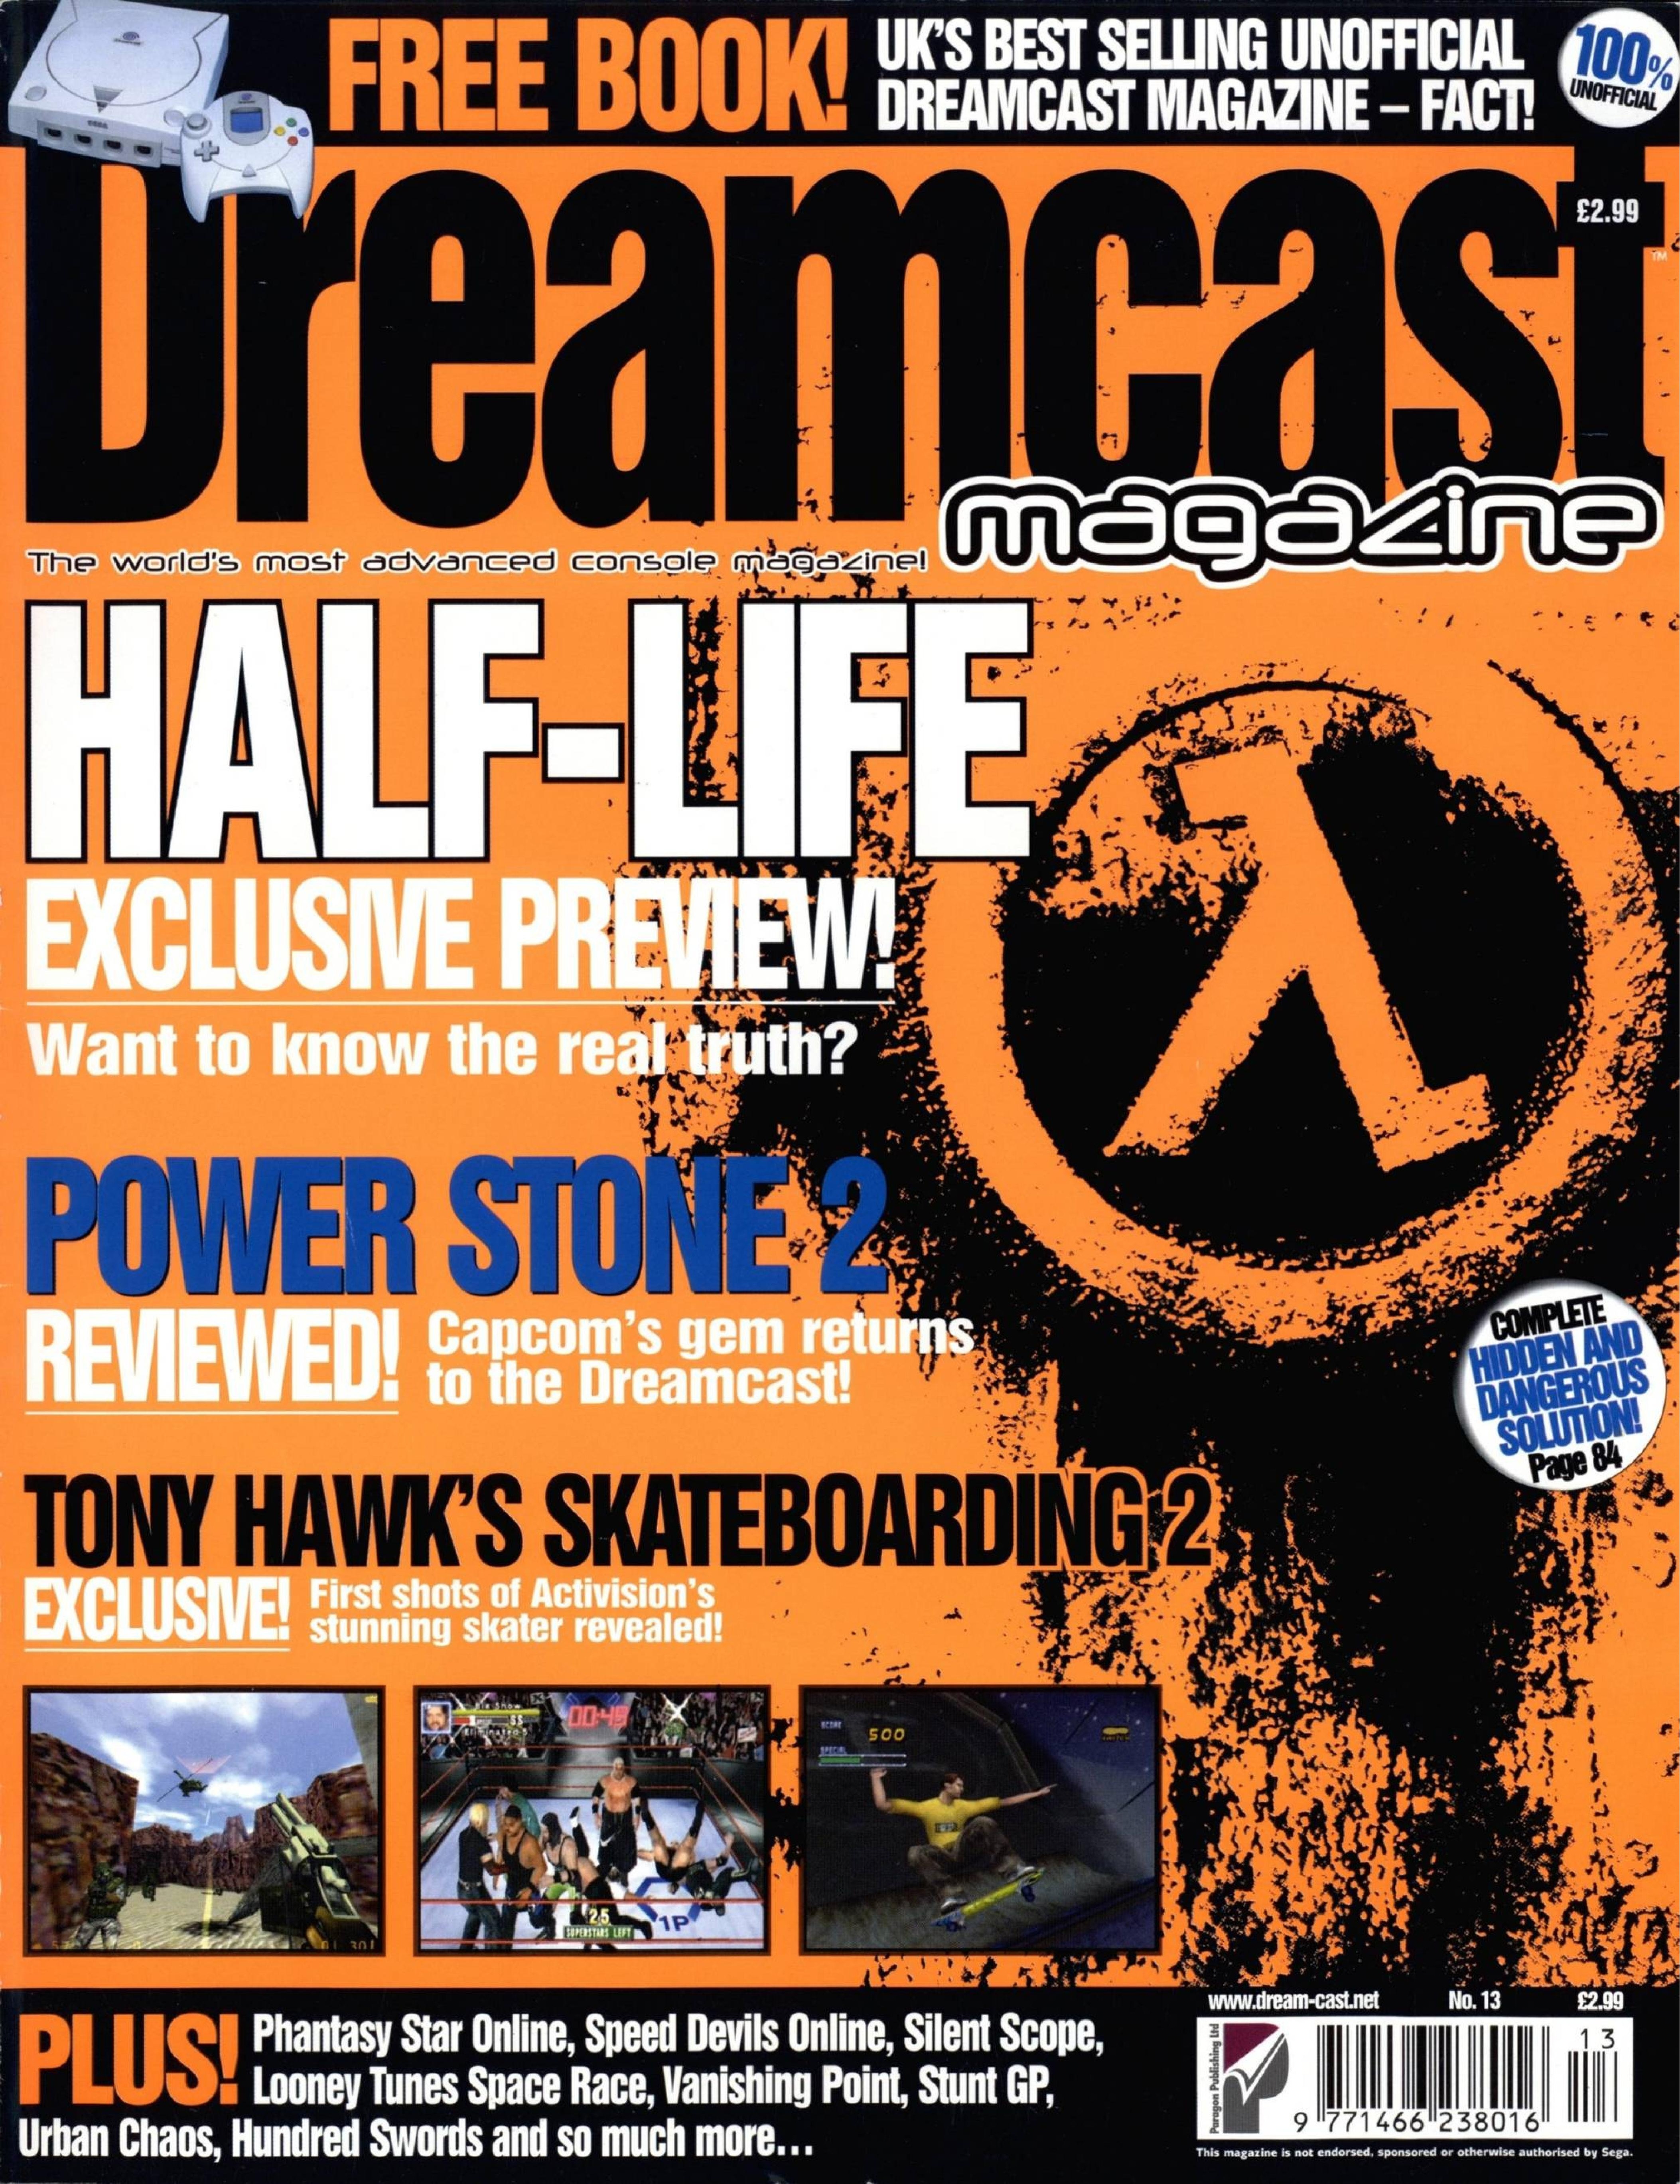 DreamcastMagazine UK 13.pdf